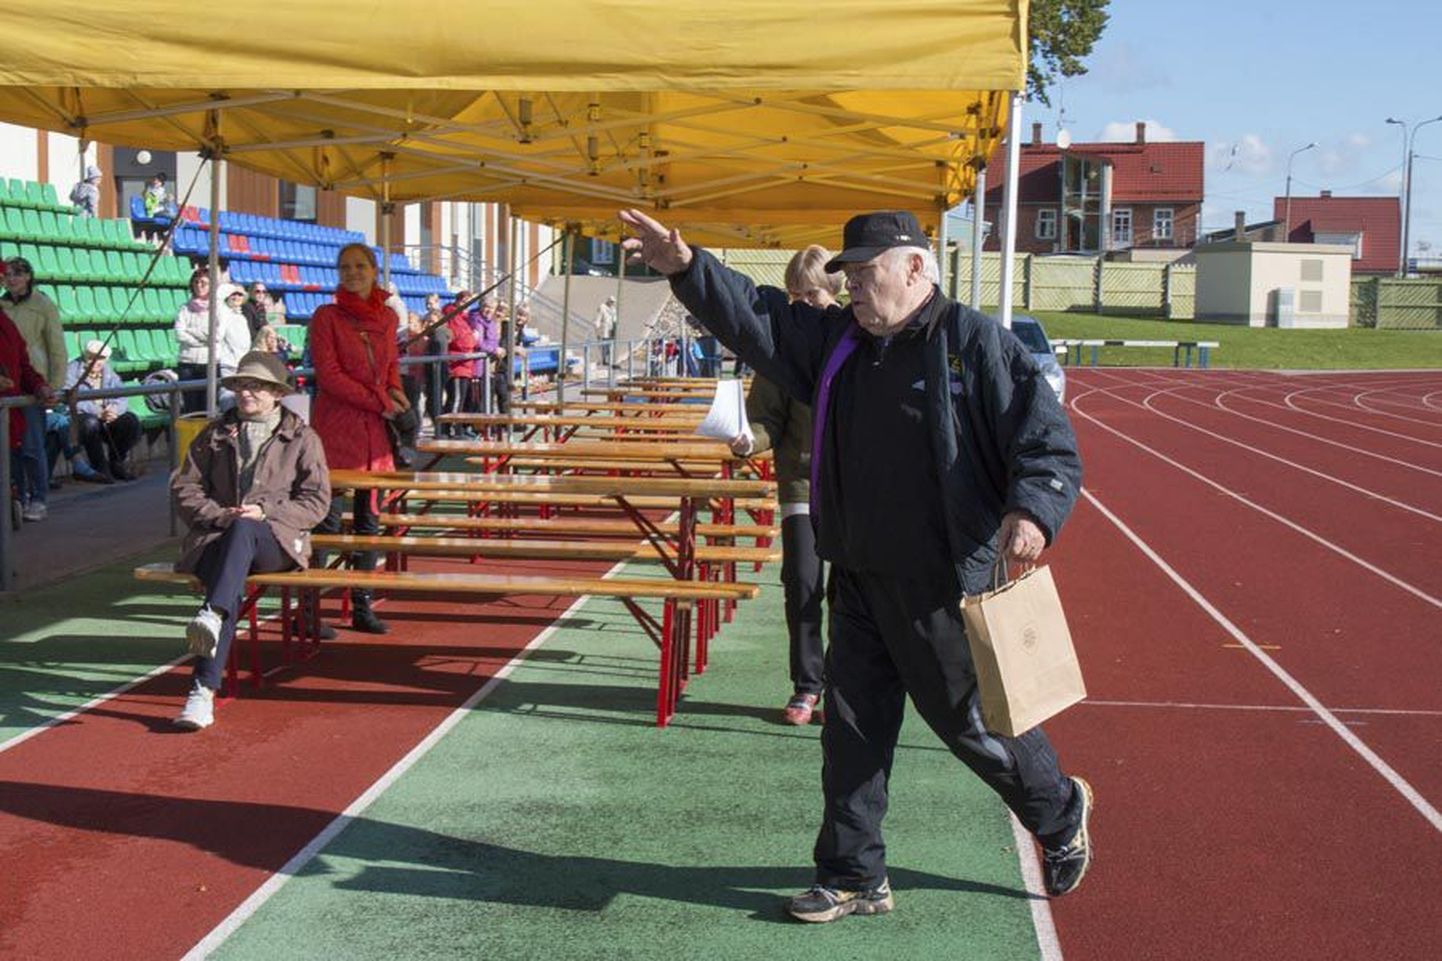 74-aastane Jaak Värnik lööb küll seni kaasa eakaaslastele ürituste korraldamises, aga plaani panna inimestele kohustus 70. eluaastani tööl käia peab ta utoopiliseks.